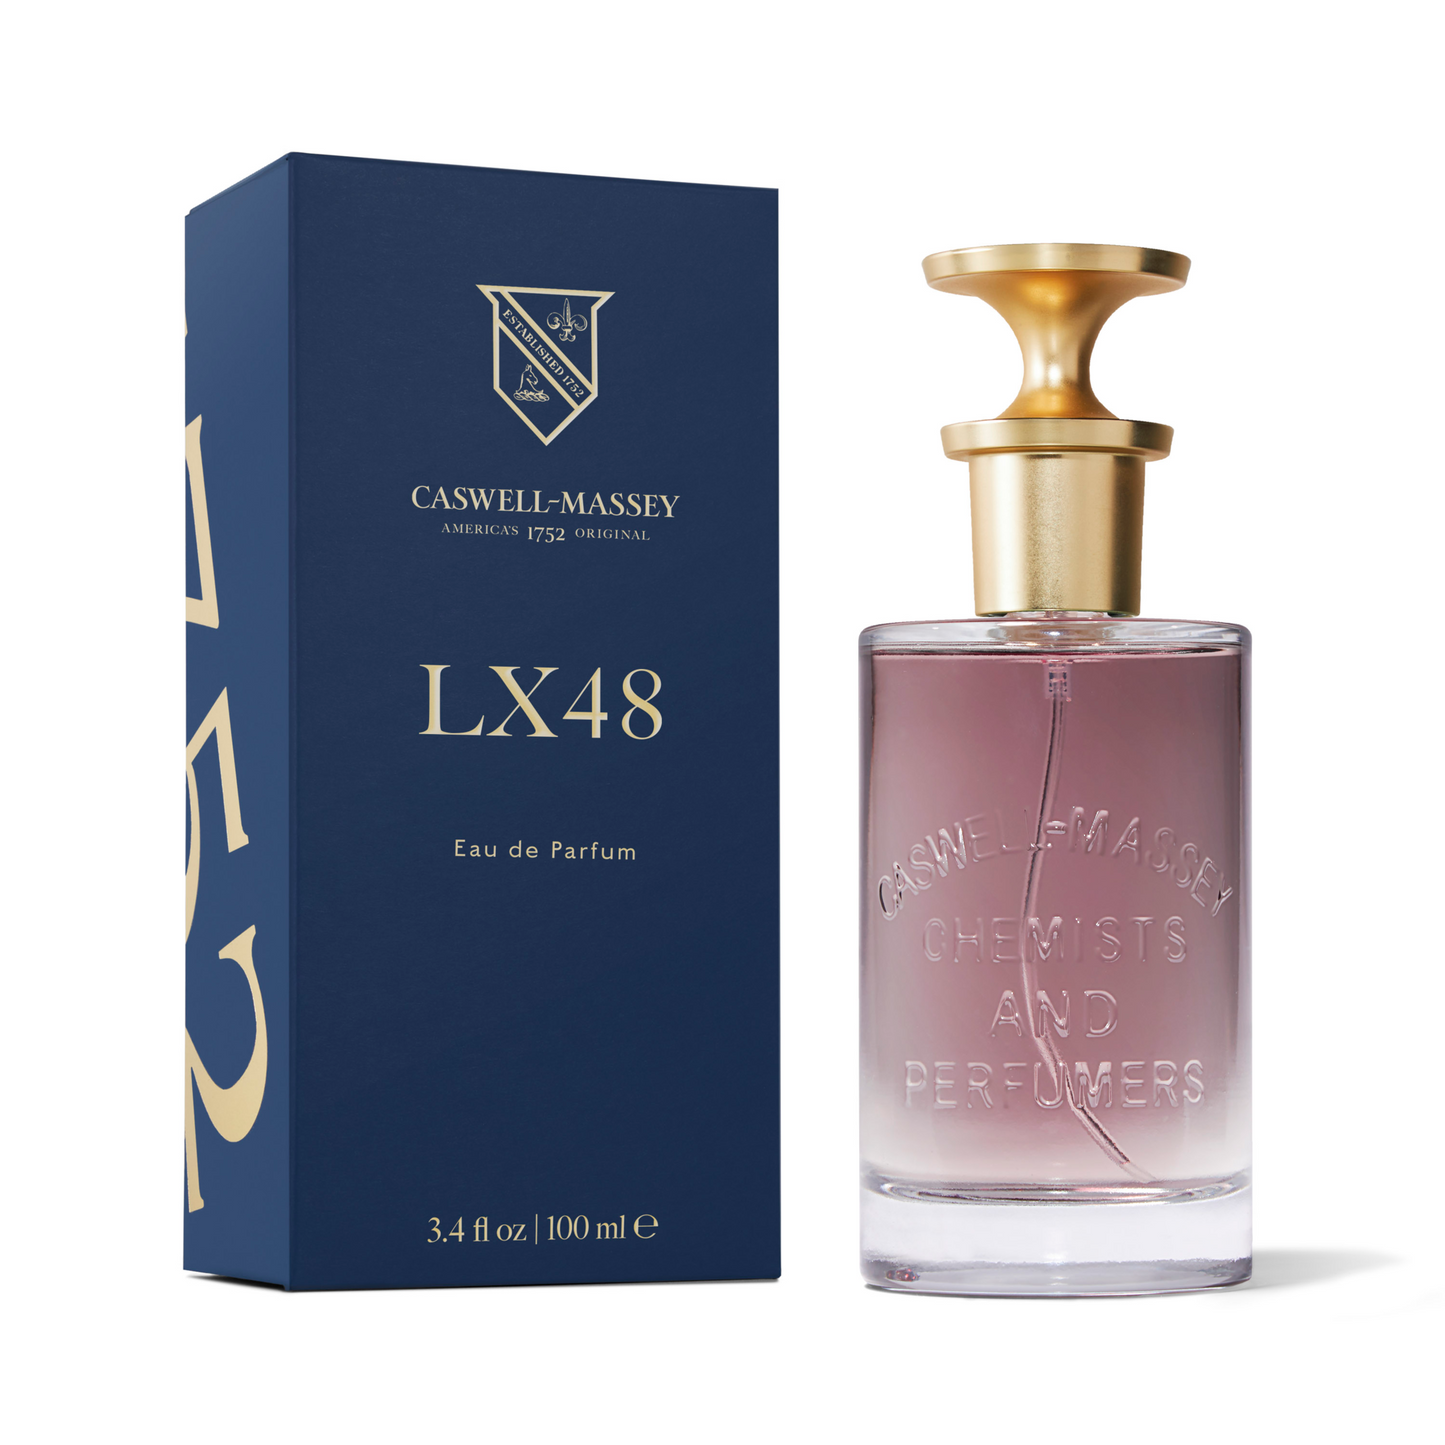 Primary Image of LX48 Eau de Parfum